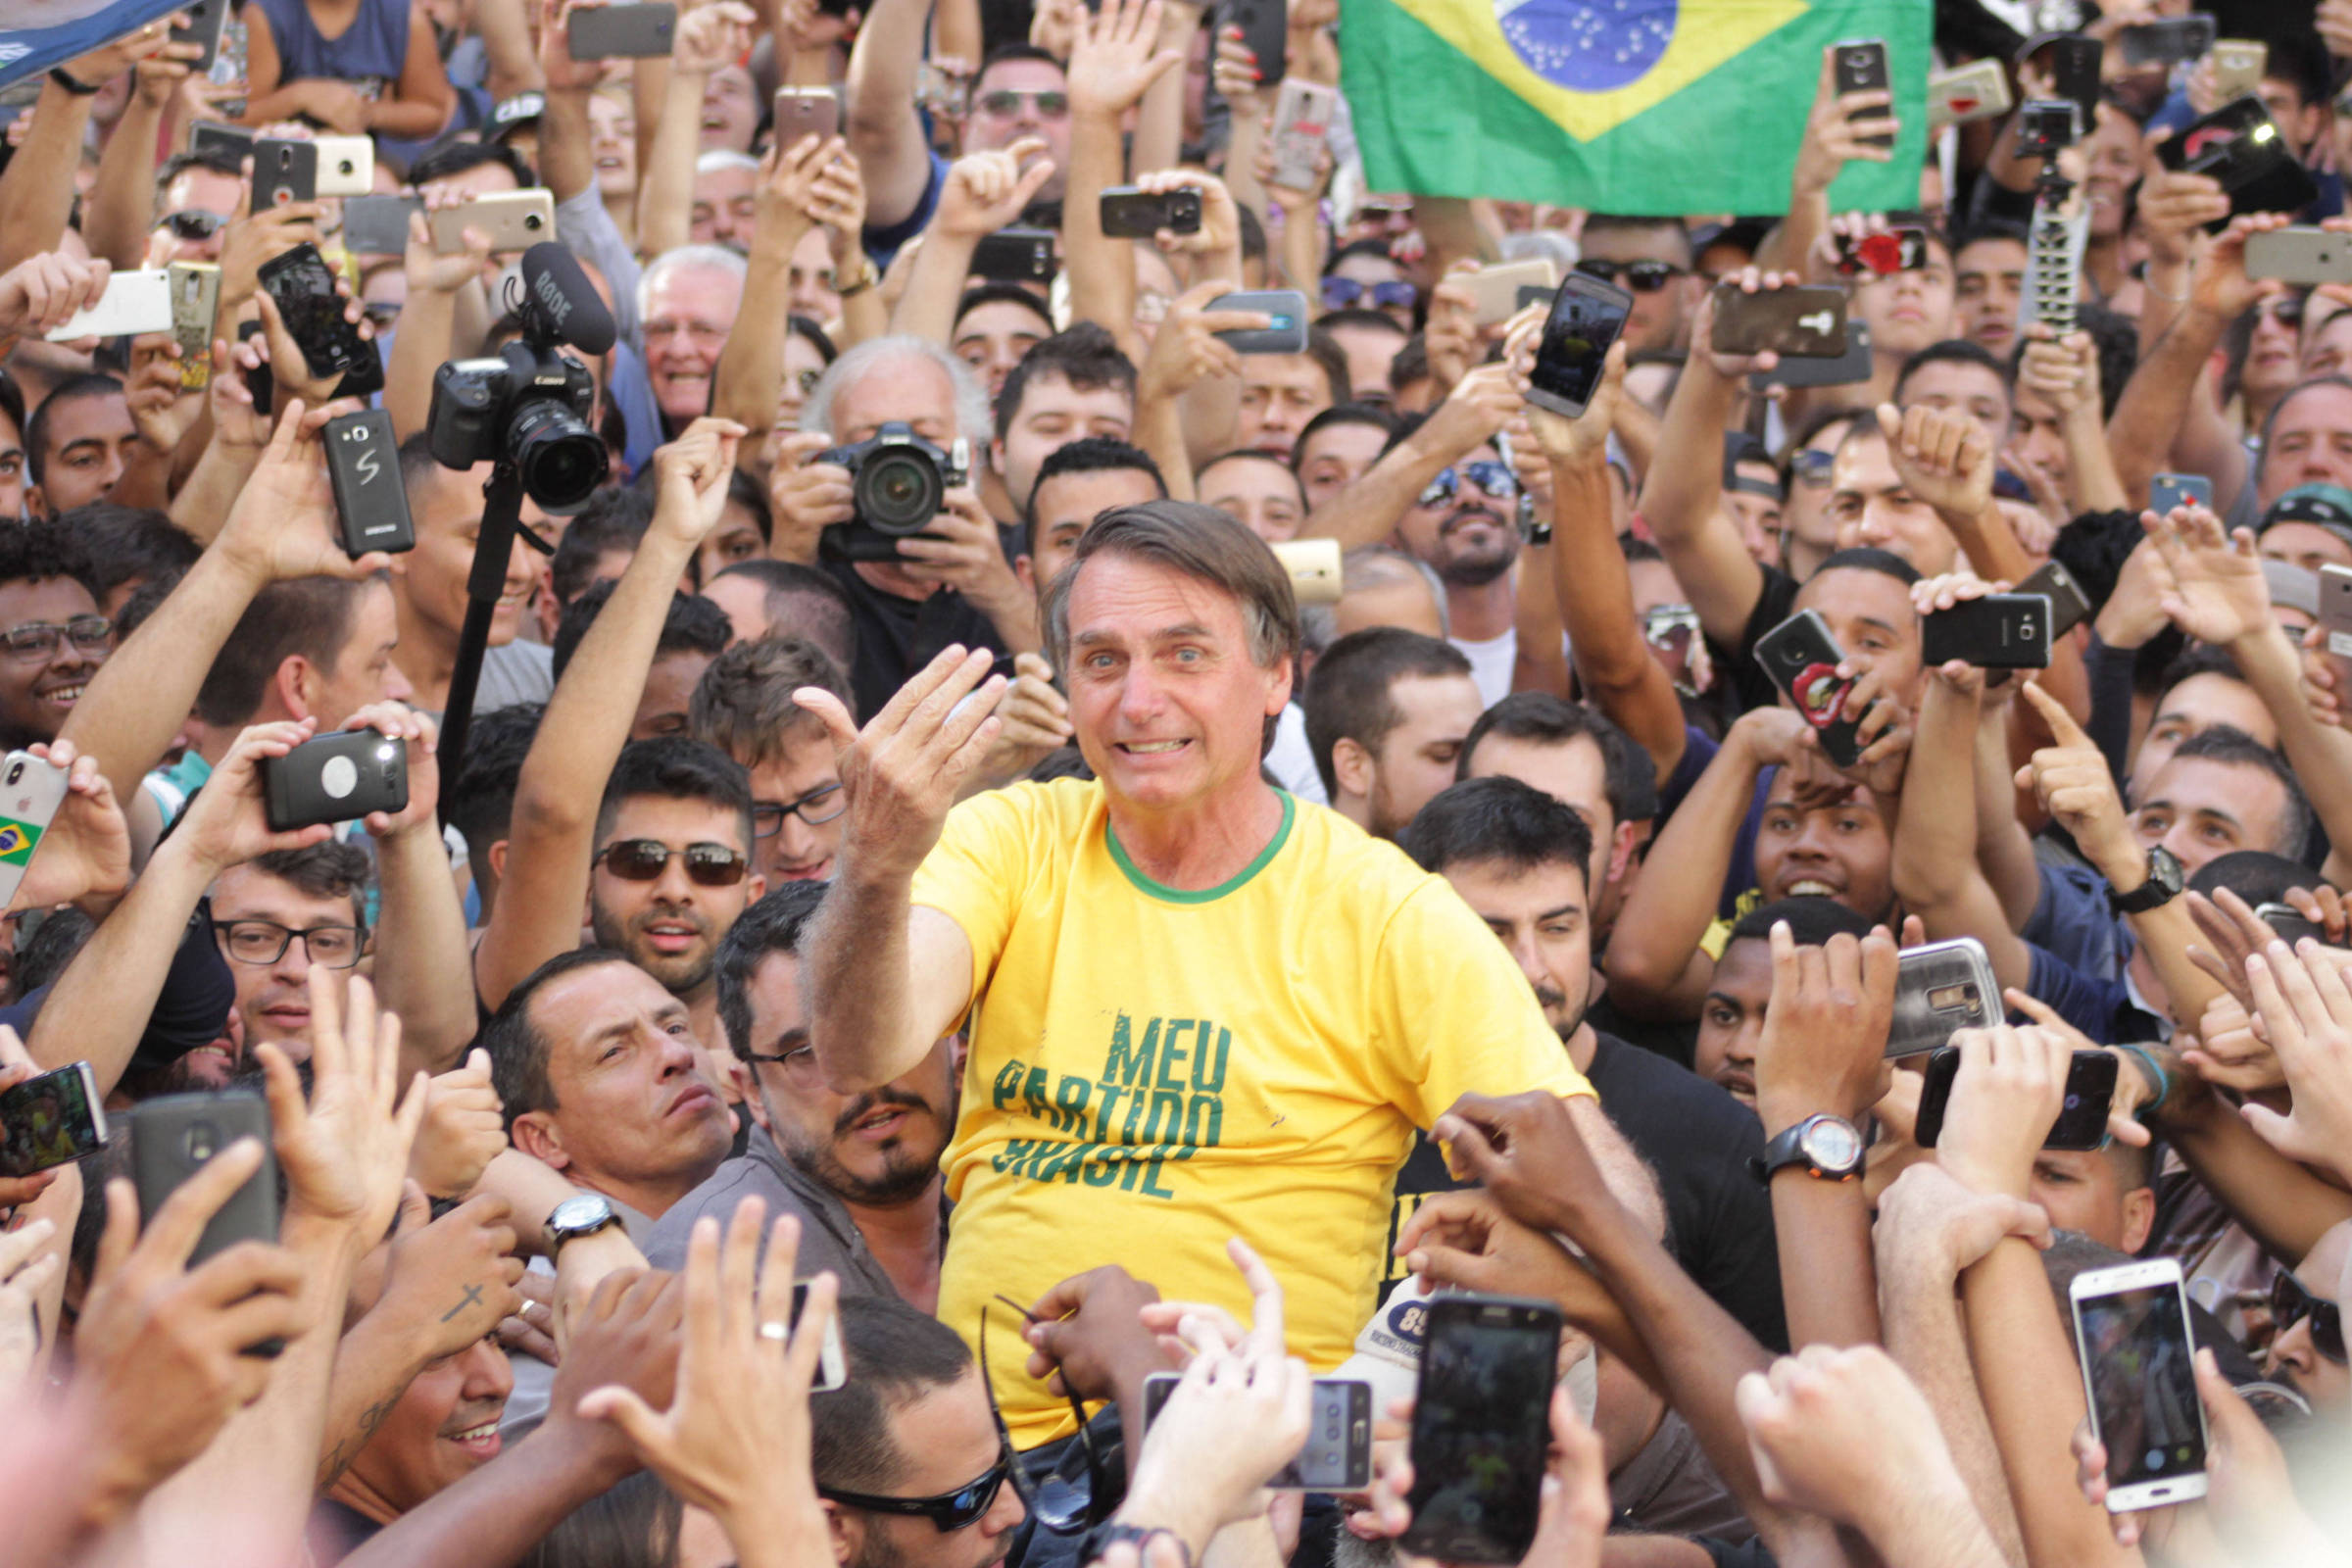 O então candidato Jair Bolsonaro, em evento de campanha em 2018
